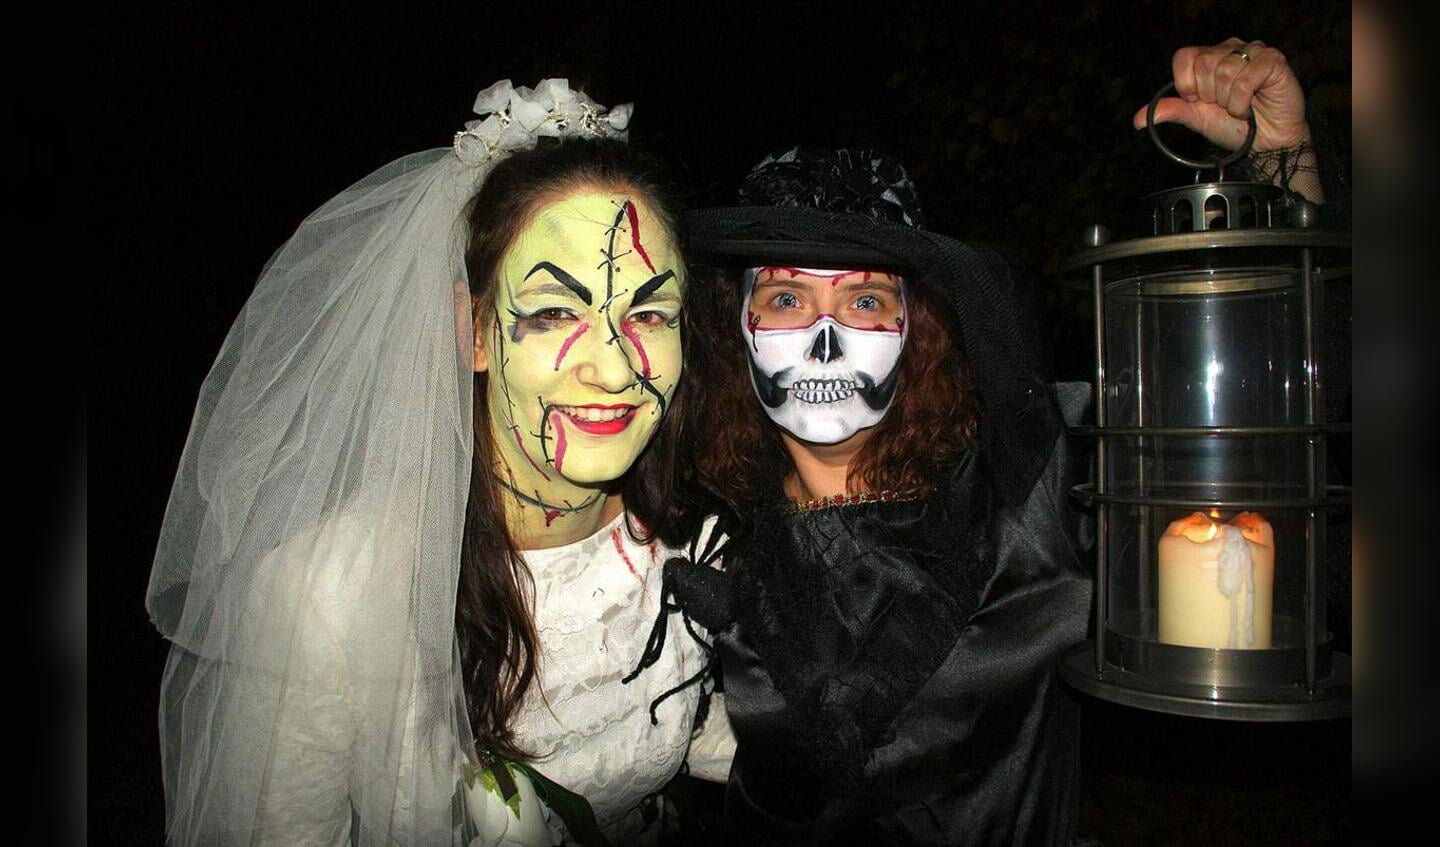 De Jonge Ondernemende Moeders (JOM) verzorgden vrijdagavond 30 oktober een geslaagde Halloweentocht in de Haagse Beemden.